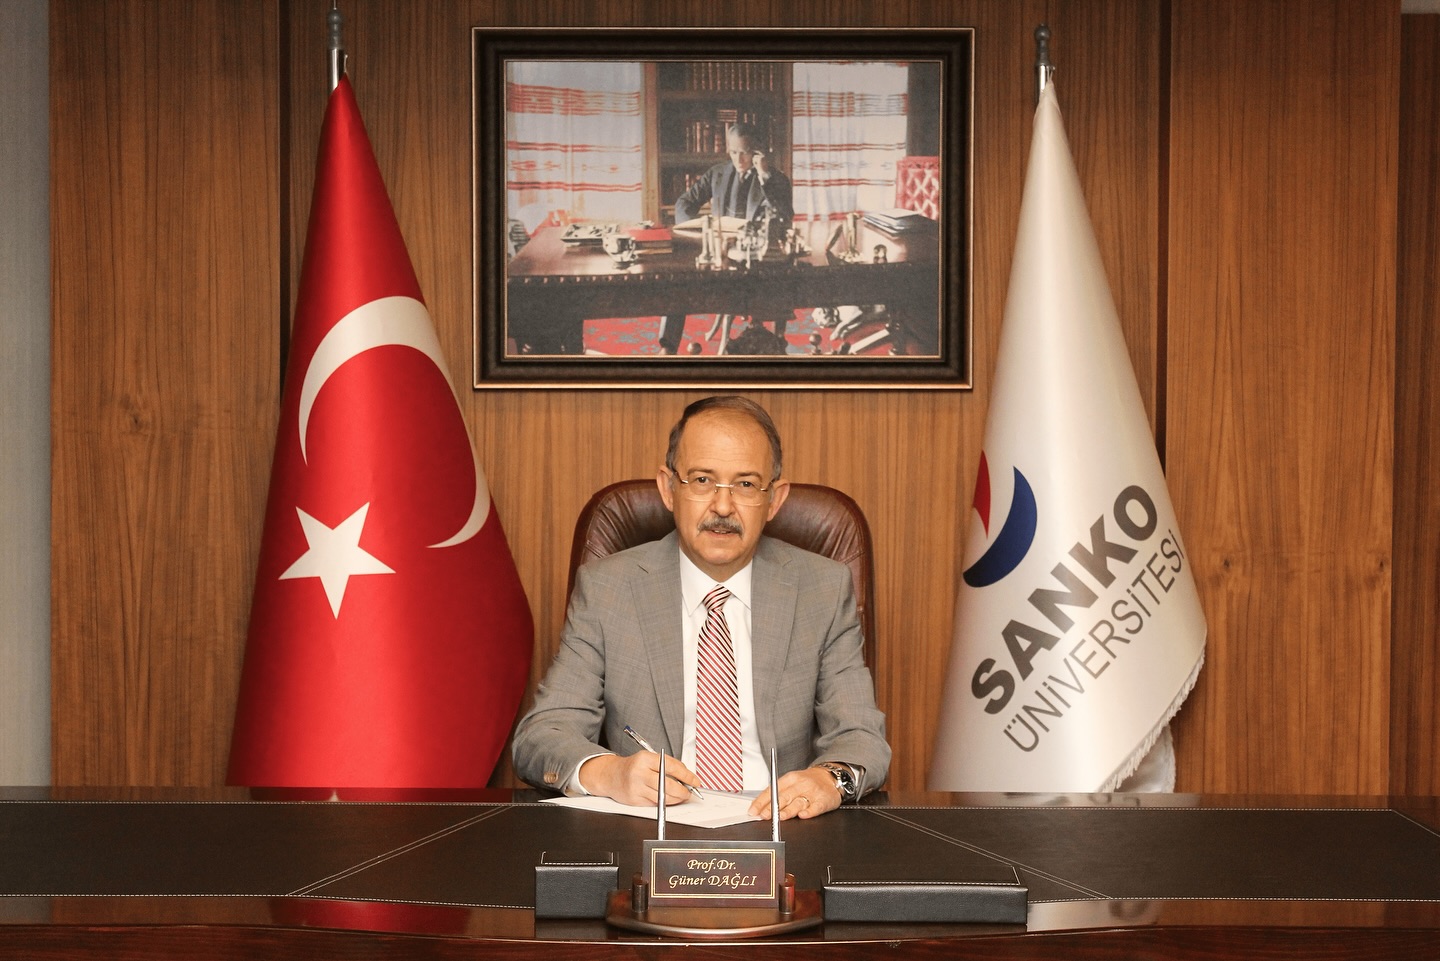 Sanko Üniversitesi Rektörü Prof. Dr. Güner Dağlı, 19 Mayıs'ta Yayınladığı Mesajında Türkiye Cumhuriyeti'nin Sembolünü Vurguladı